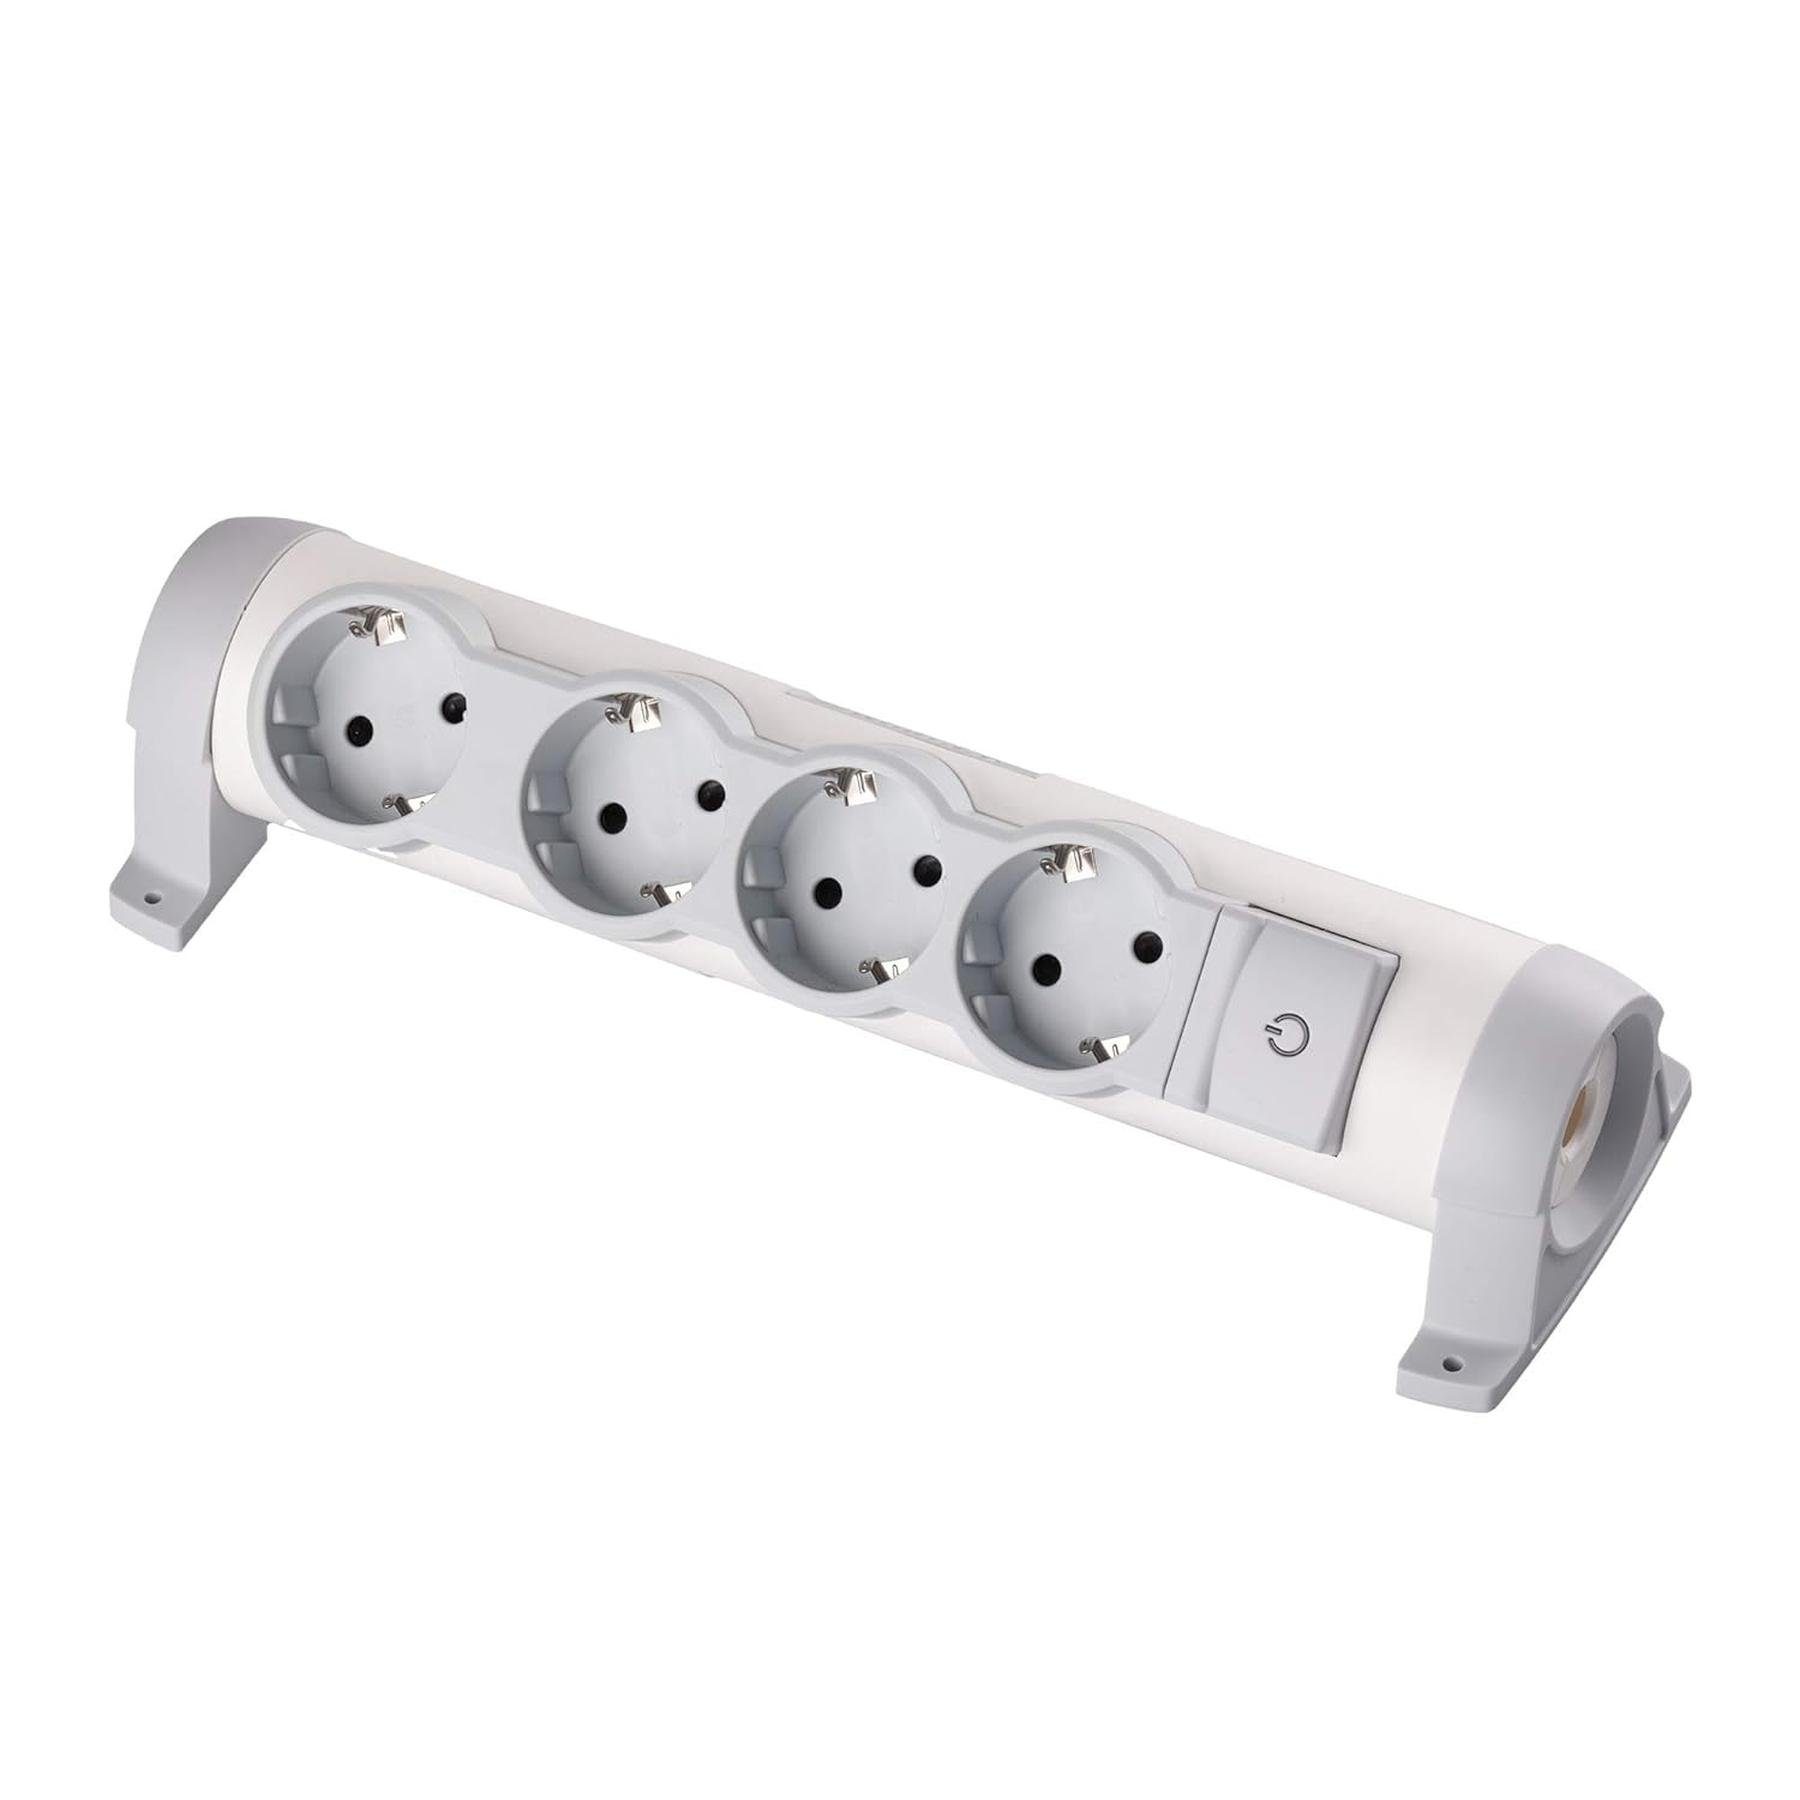 legrand® Stecker drehbare Steckdosenleiste mit Kontroll Schalter Mehrfachsteckdose (Ein- / Ausschalter), 45° gedreht,Ohne Kabel,mit LED-Beleuchtung | Merhfachsteckersysteme